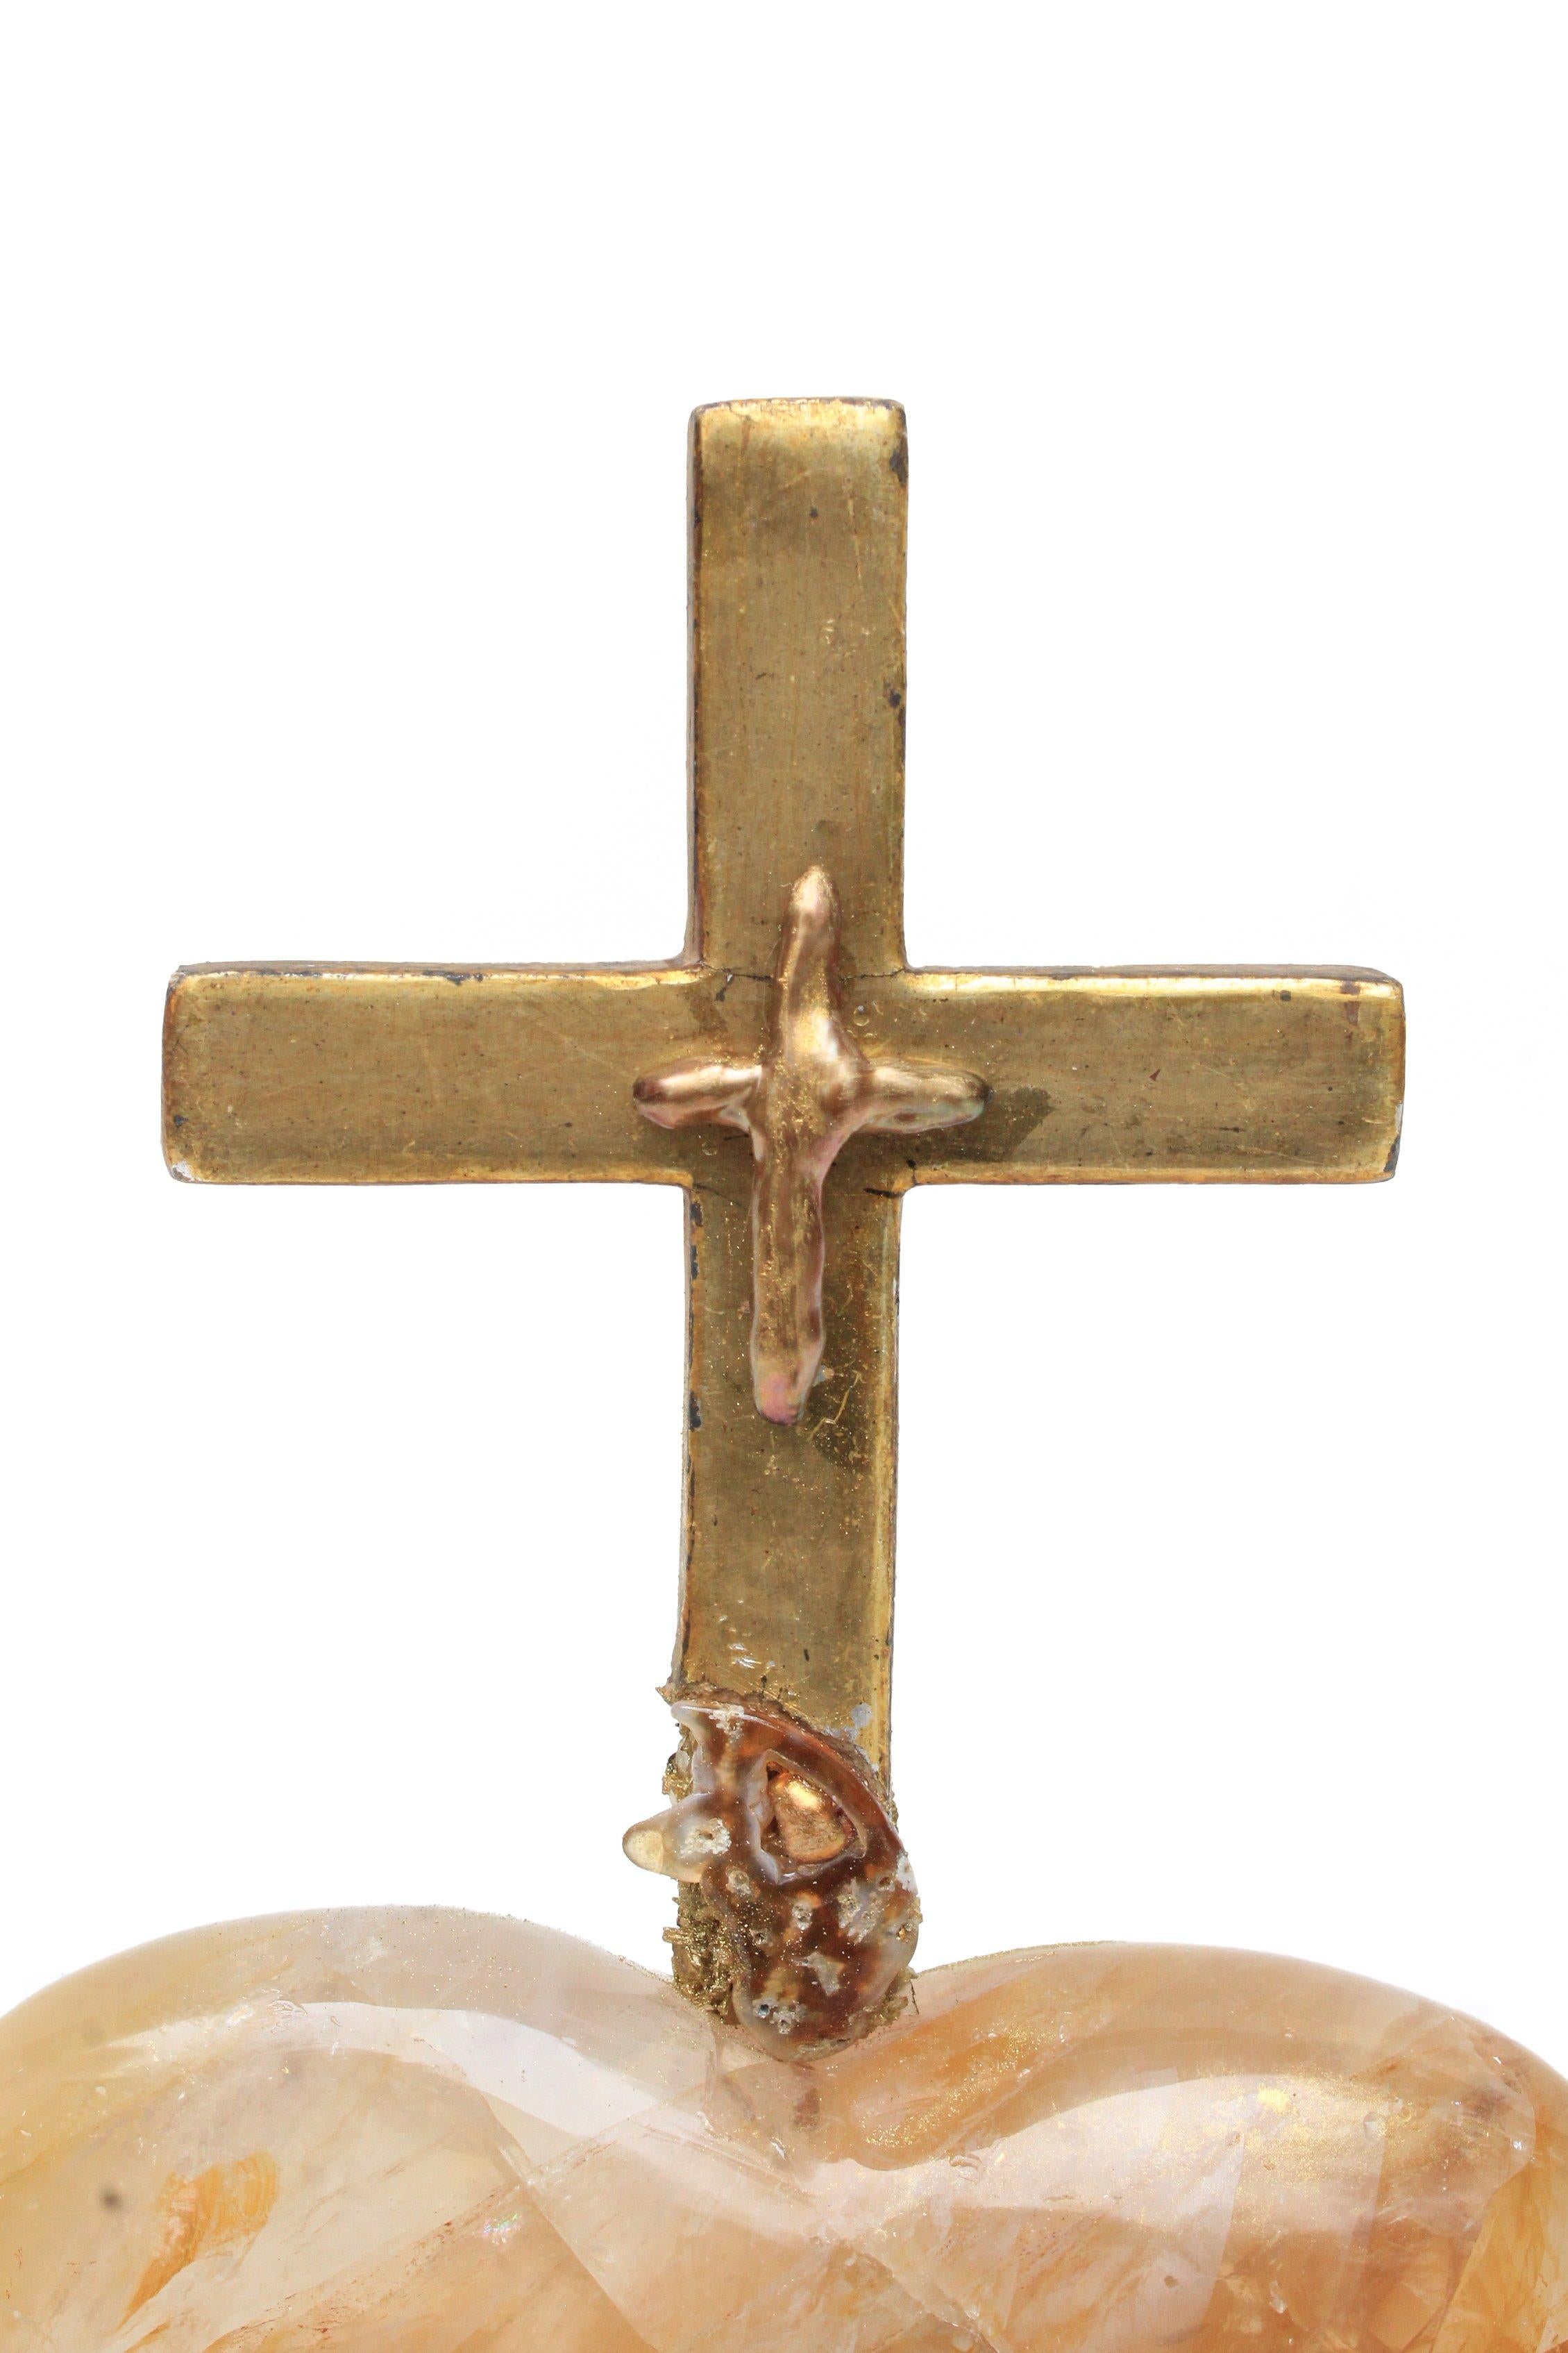 croix italienne du XVIIIe siècle montée sur un cœur en quartz hématoïde jaune poli et ornée de perles baroques de forme naturelle et d'une perle baroque en forme de croix. La pièce s'inspire du 